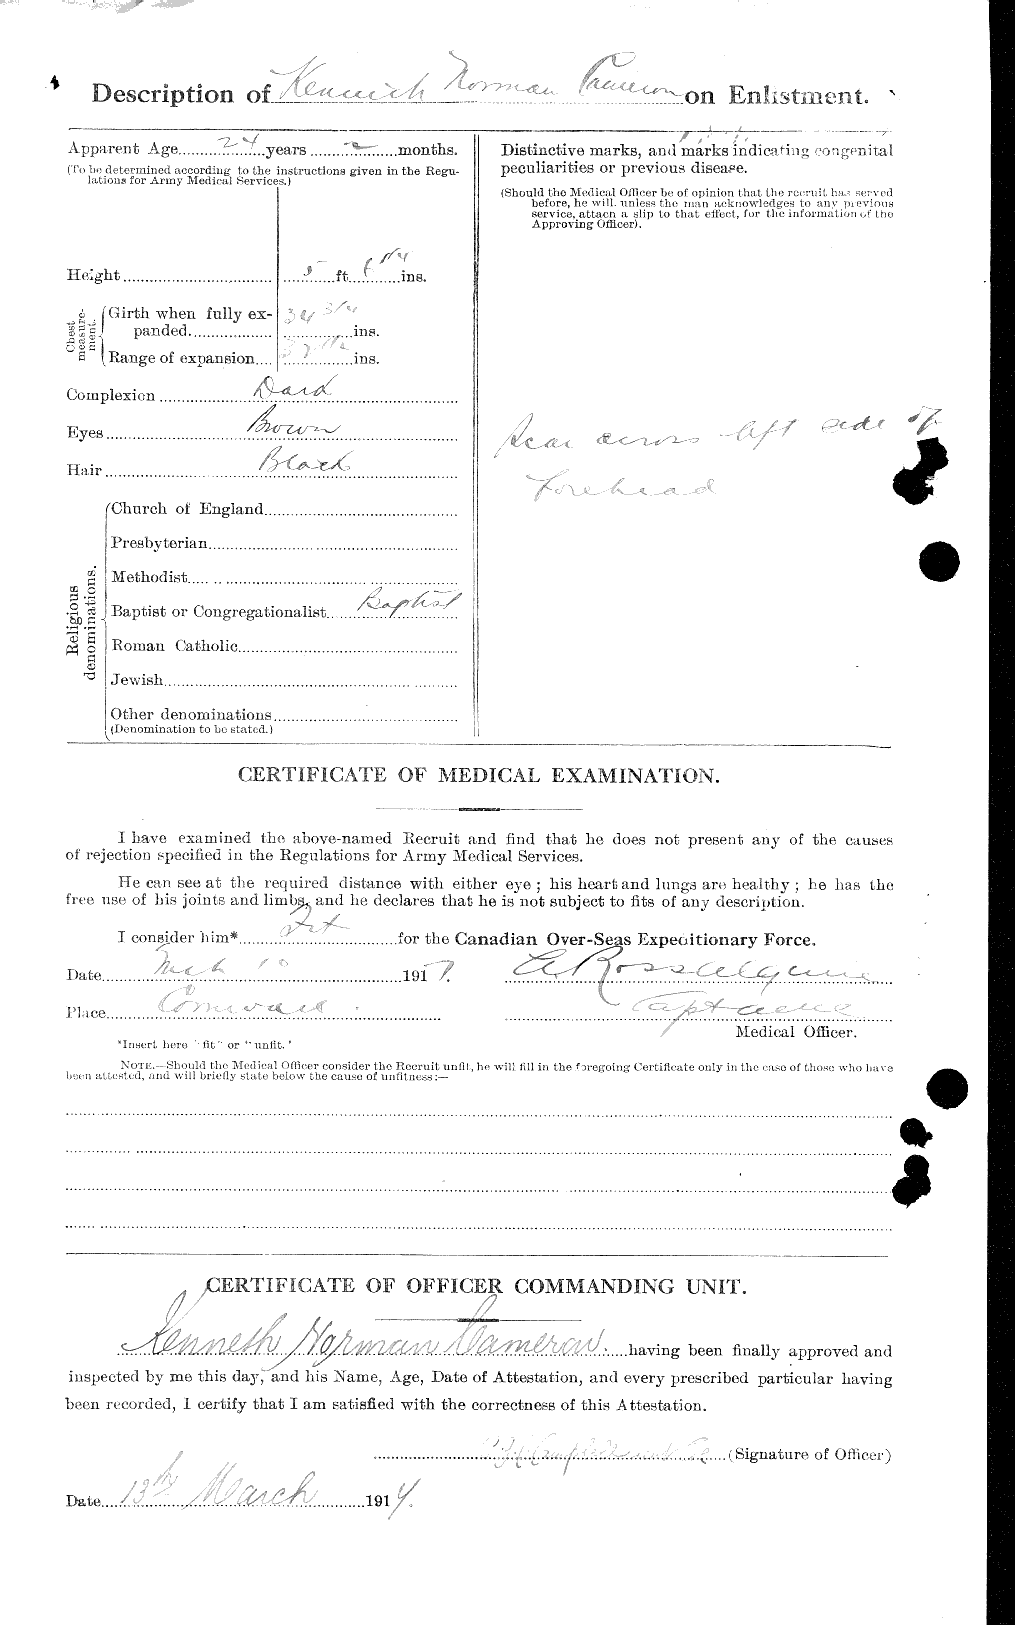 Dossiers du Personnel de la Première Guerre mondiale - CEC 002377b